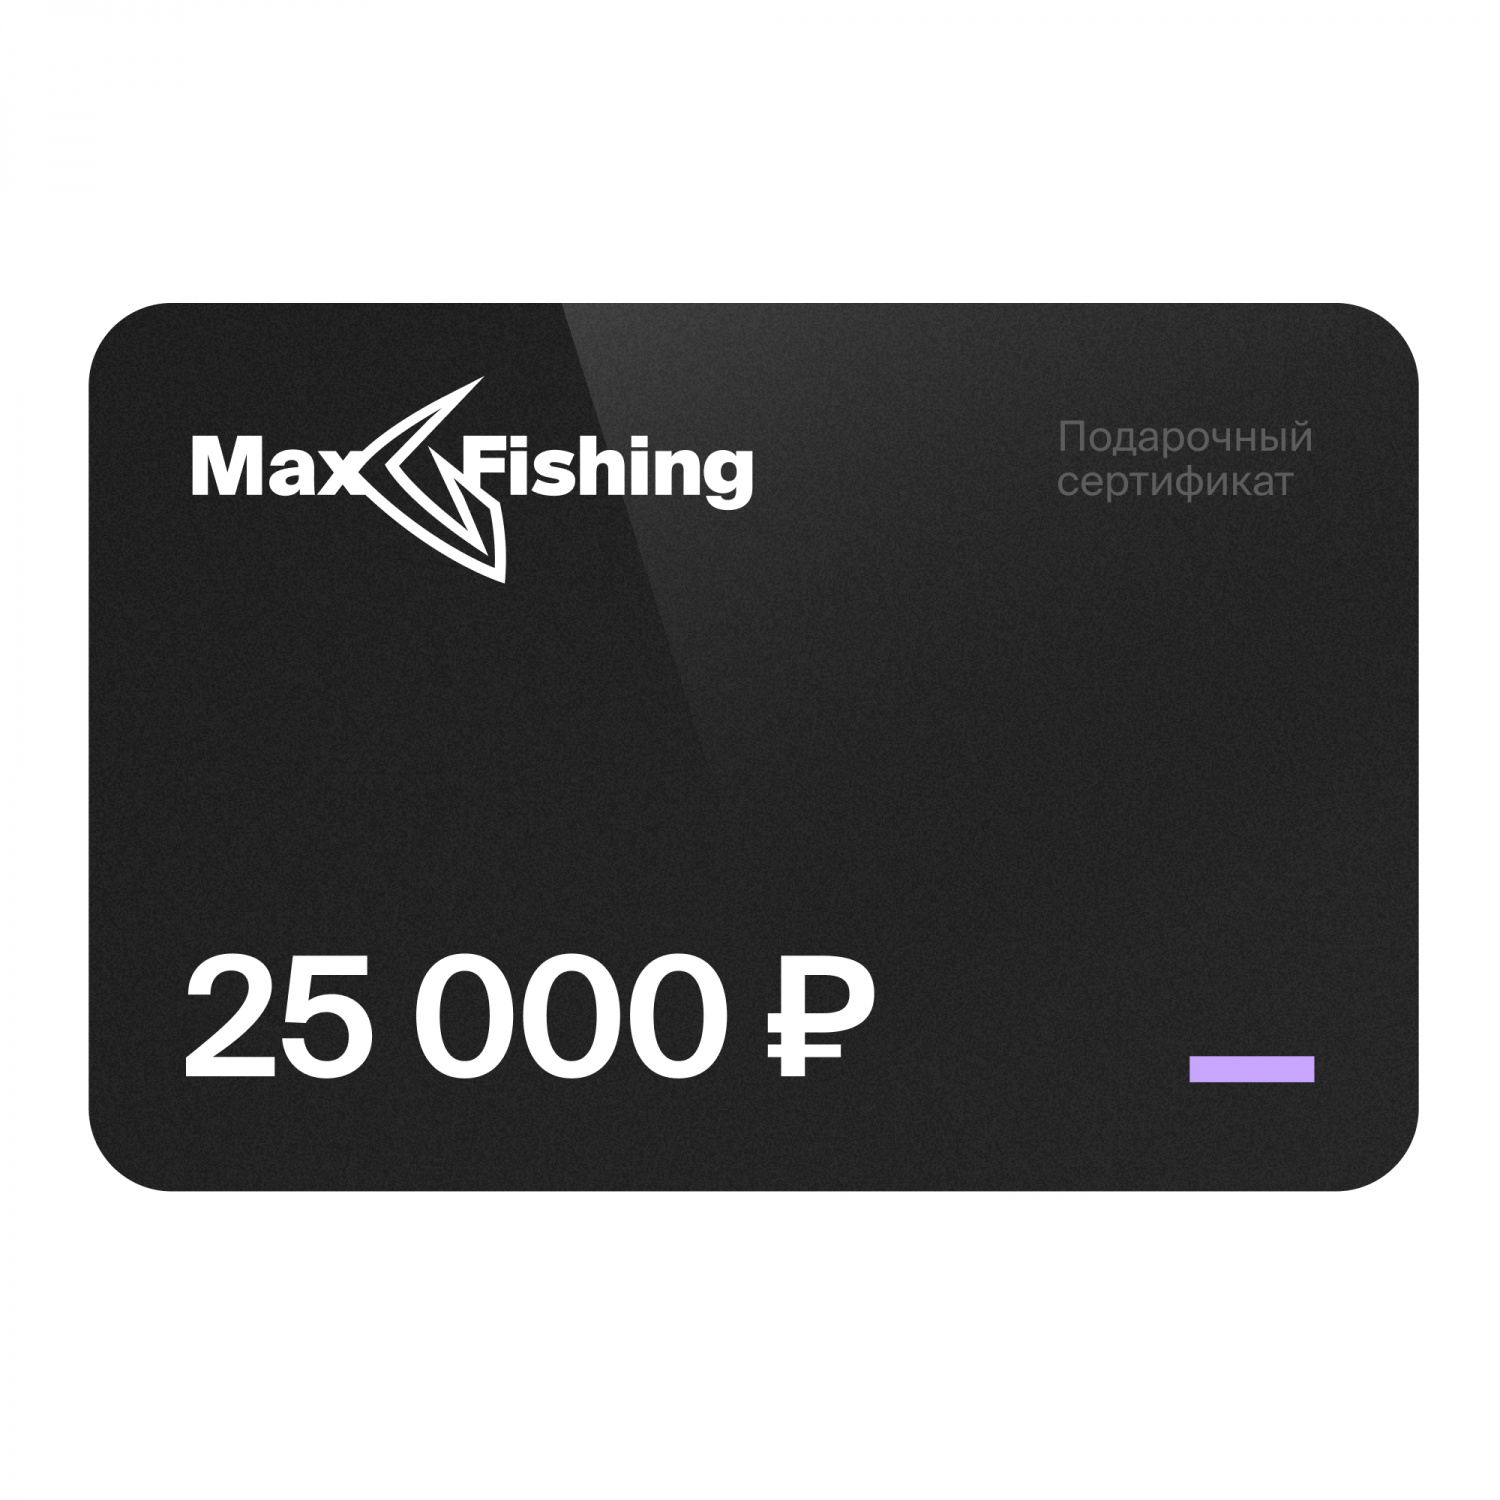 Подарочный сертификат MaxFishing 25 000 ₽ виртуальный подарочный сертификат 3 000